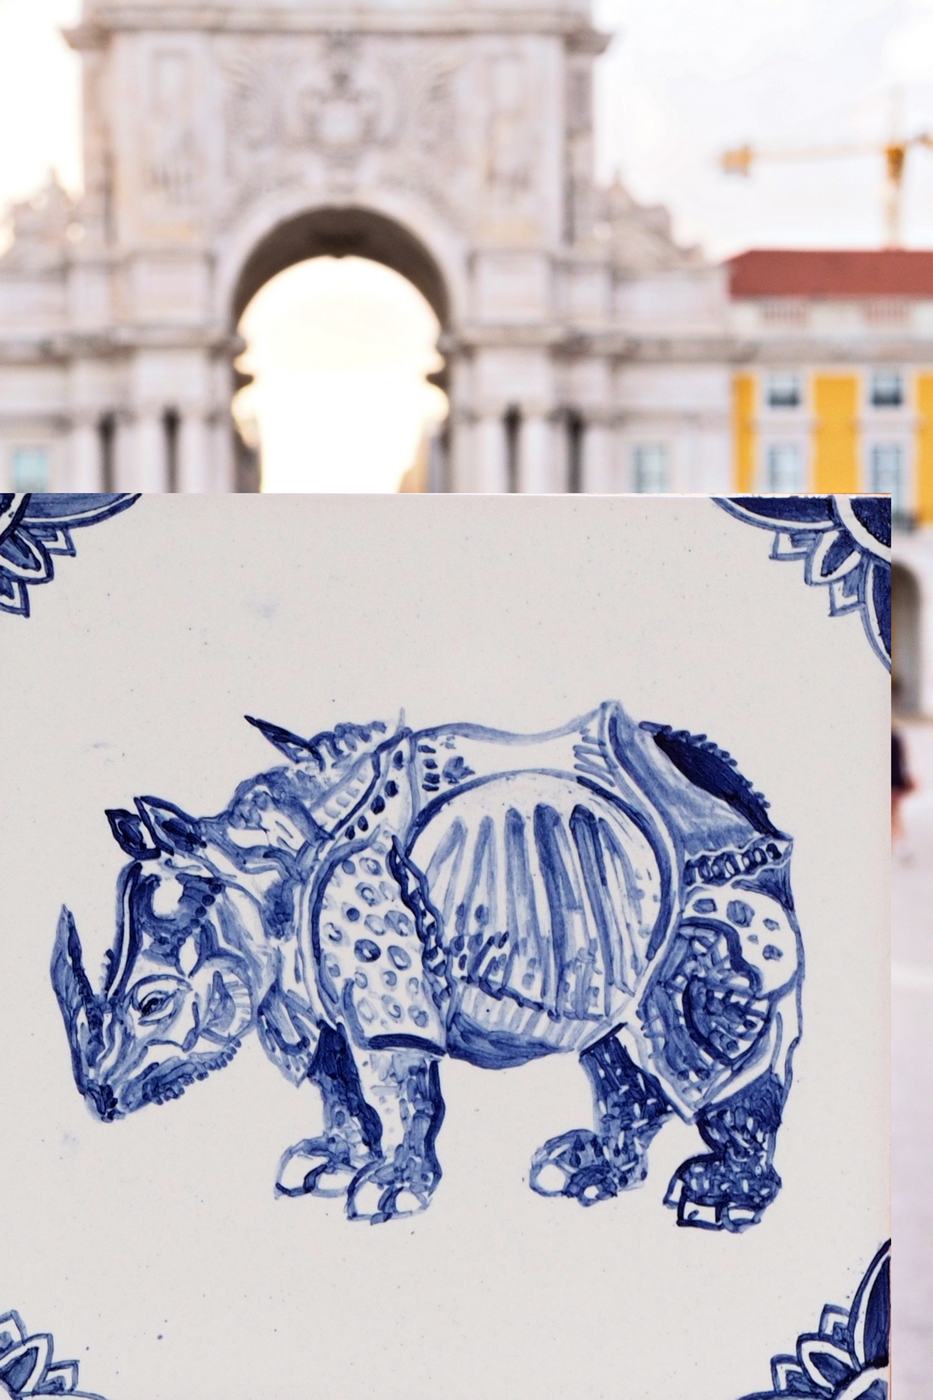 Niebieski nosorożec Durera wrócił do Lizbony!